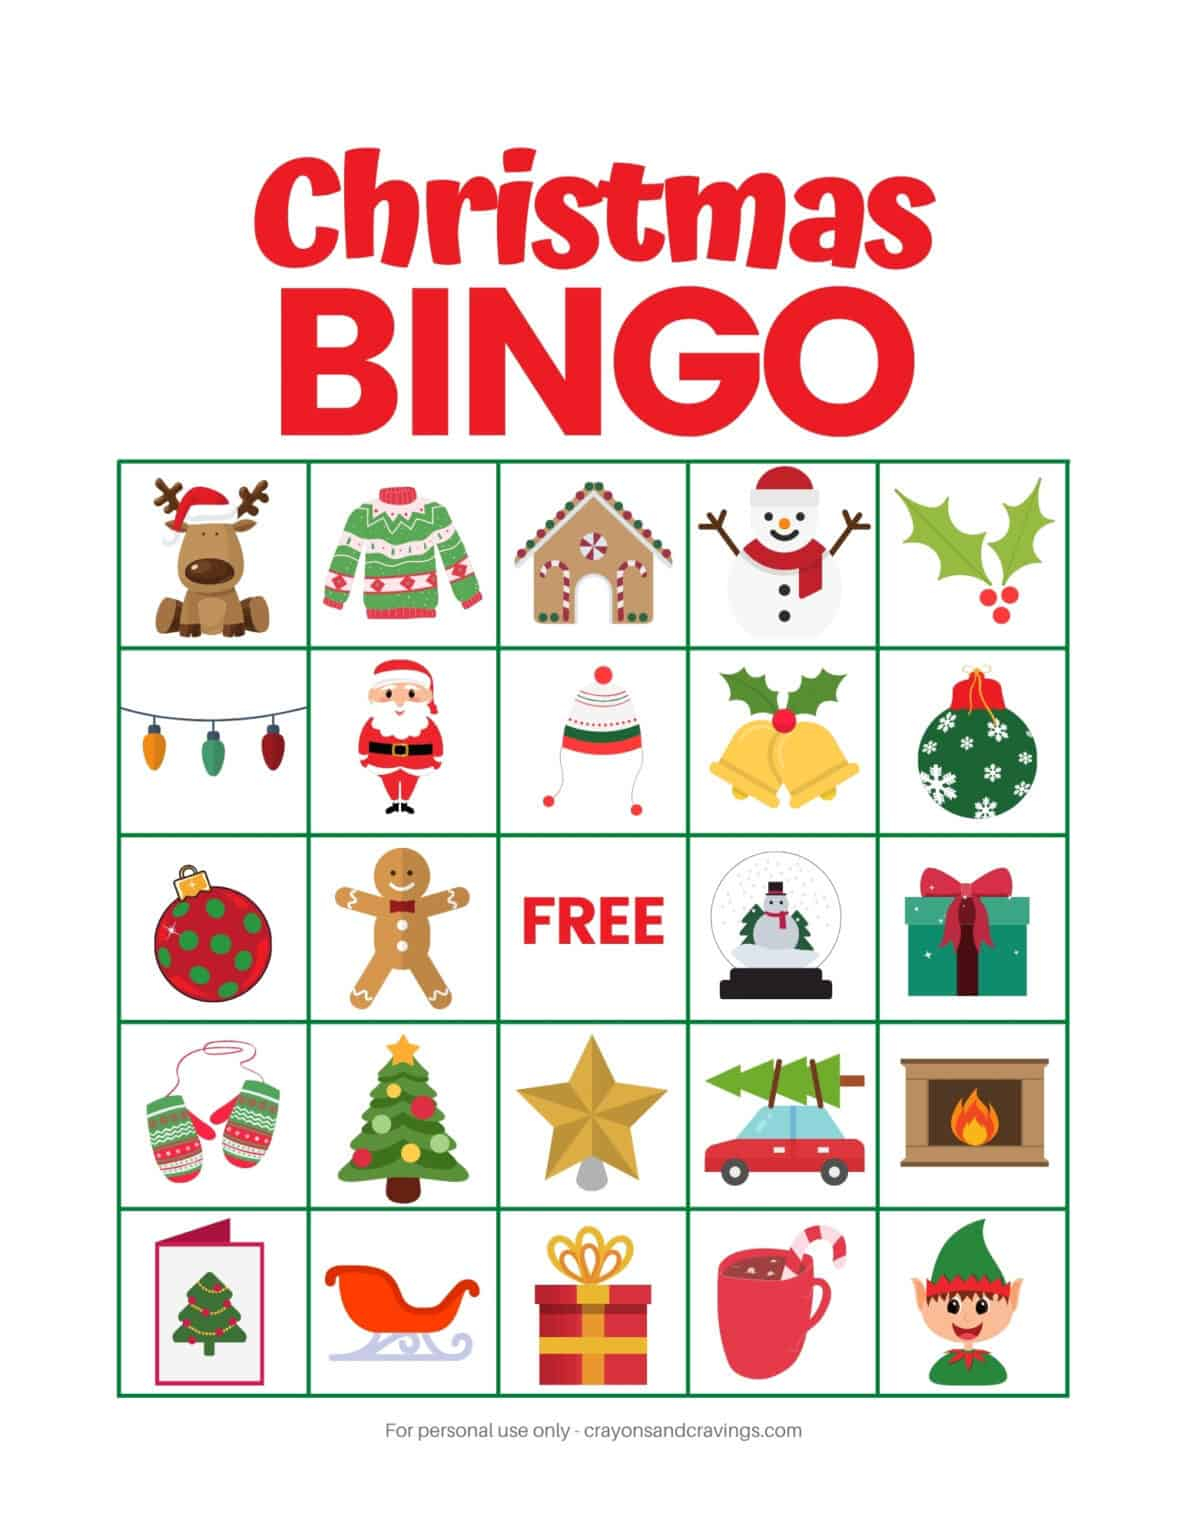 Christmas Bingo FREE Printable Christmas Game With 10 Cards 